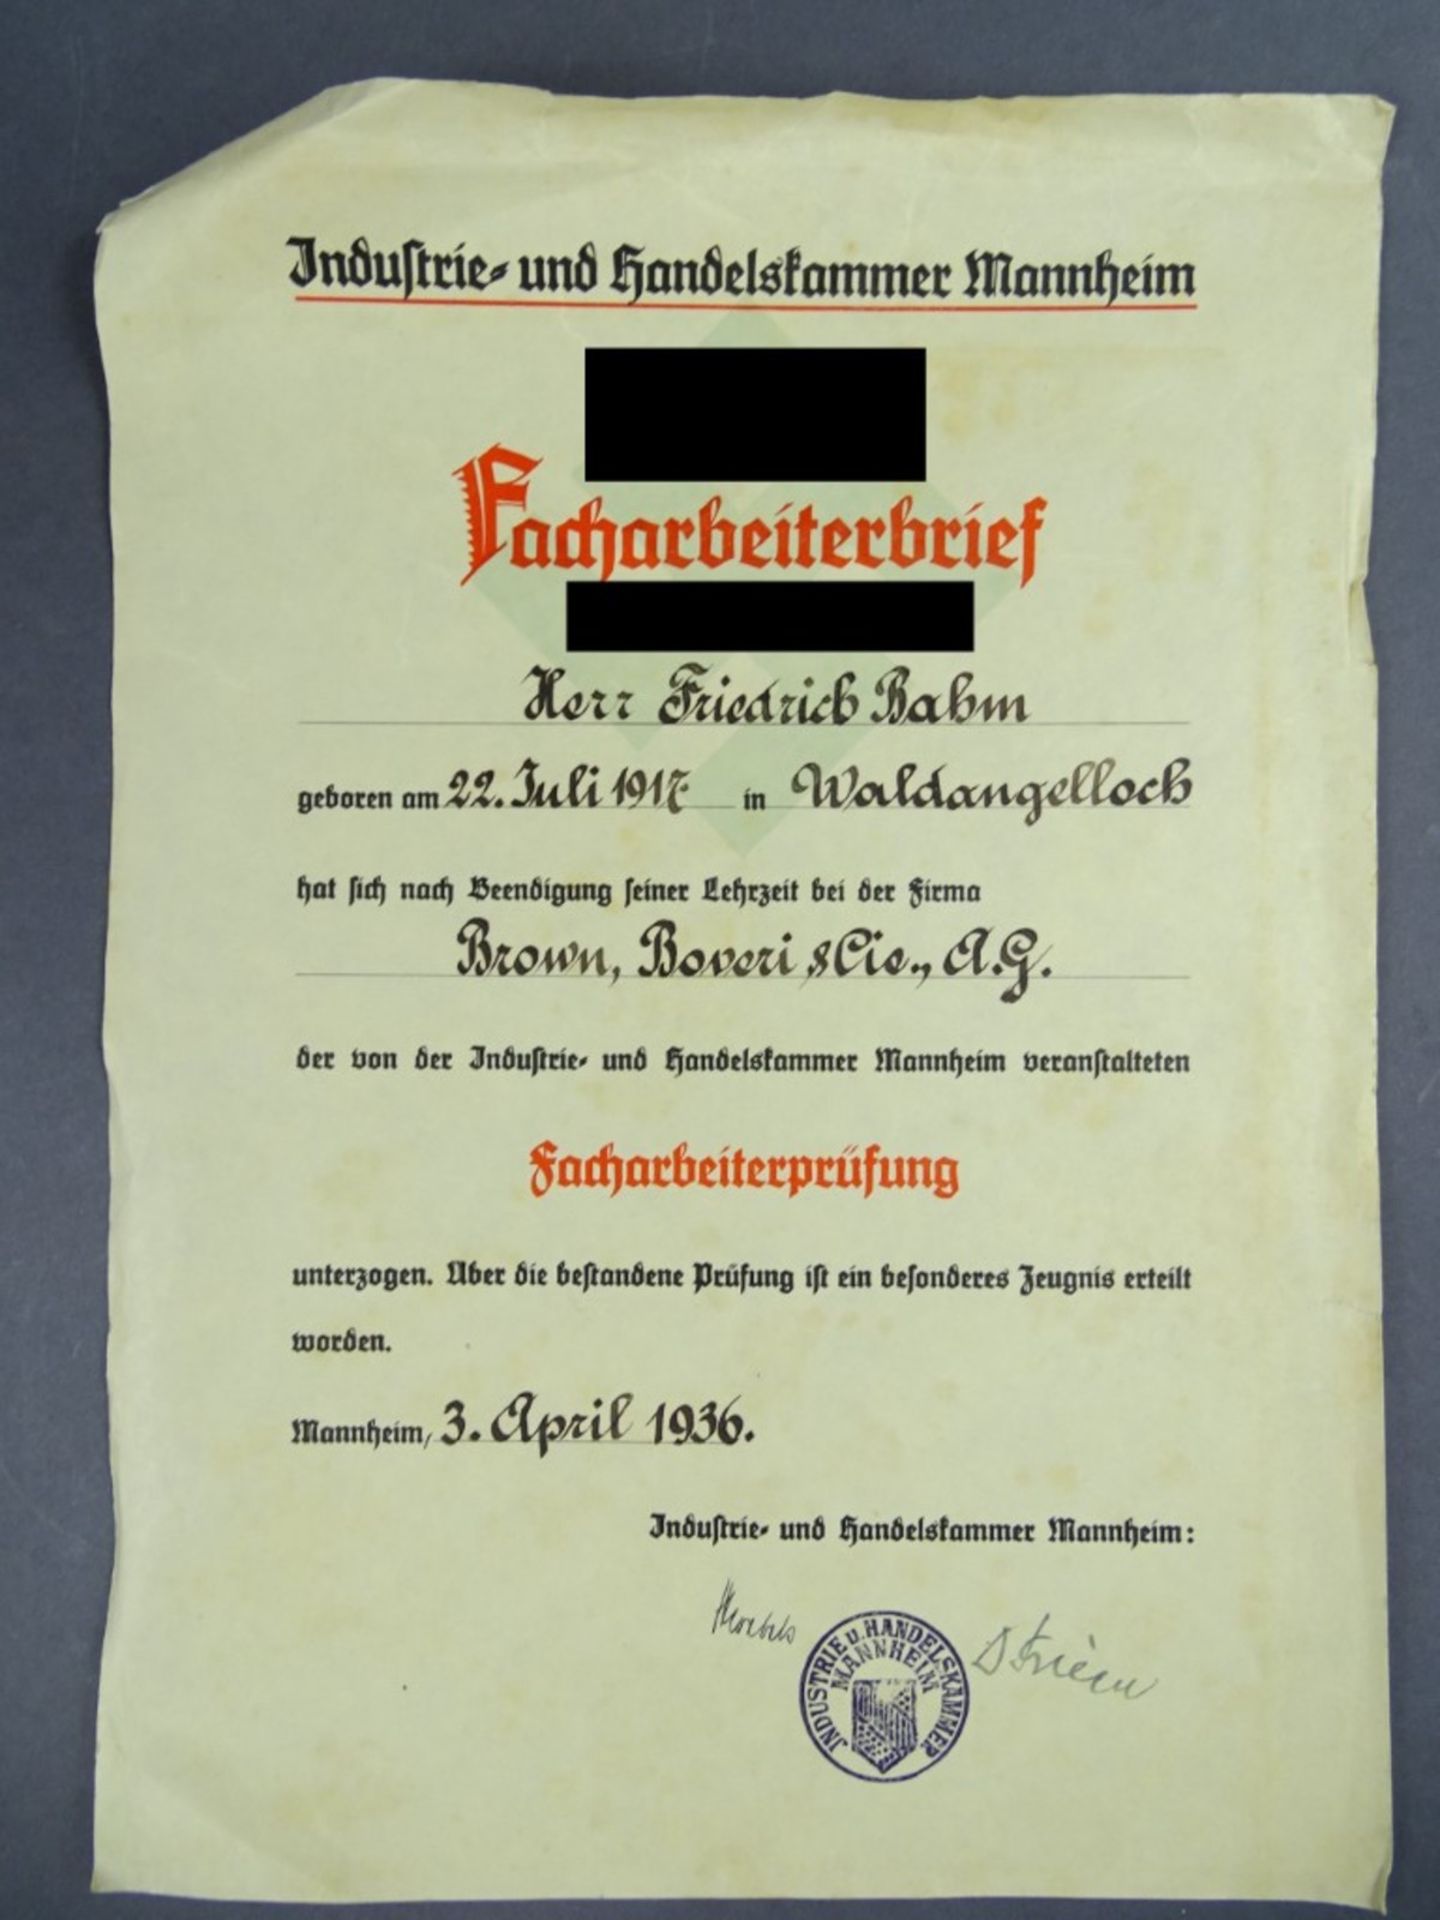 Facharbeiterbrief von 1936, Gilb sowie kleine Risse und Knicke vorhanden